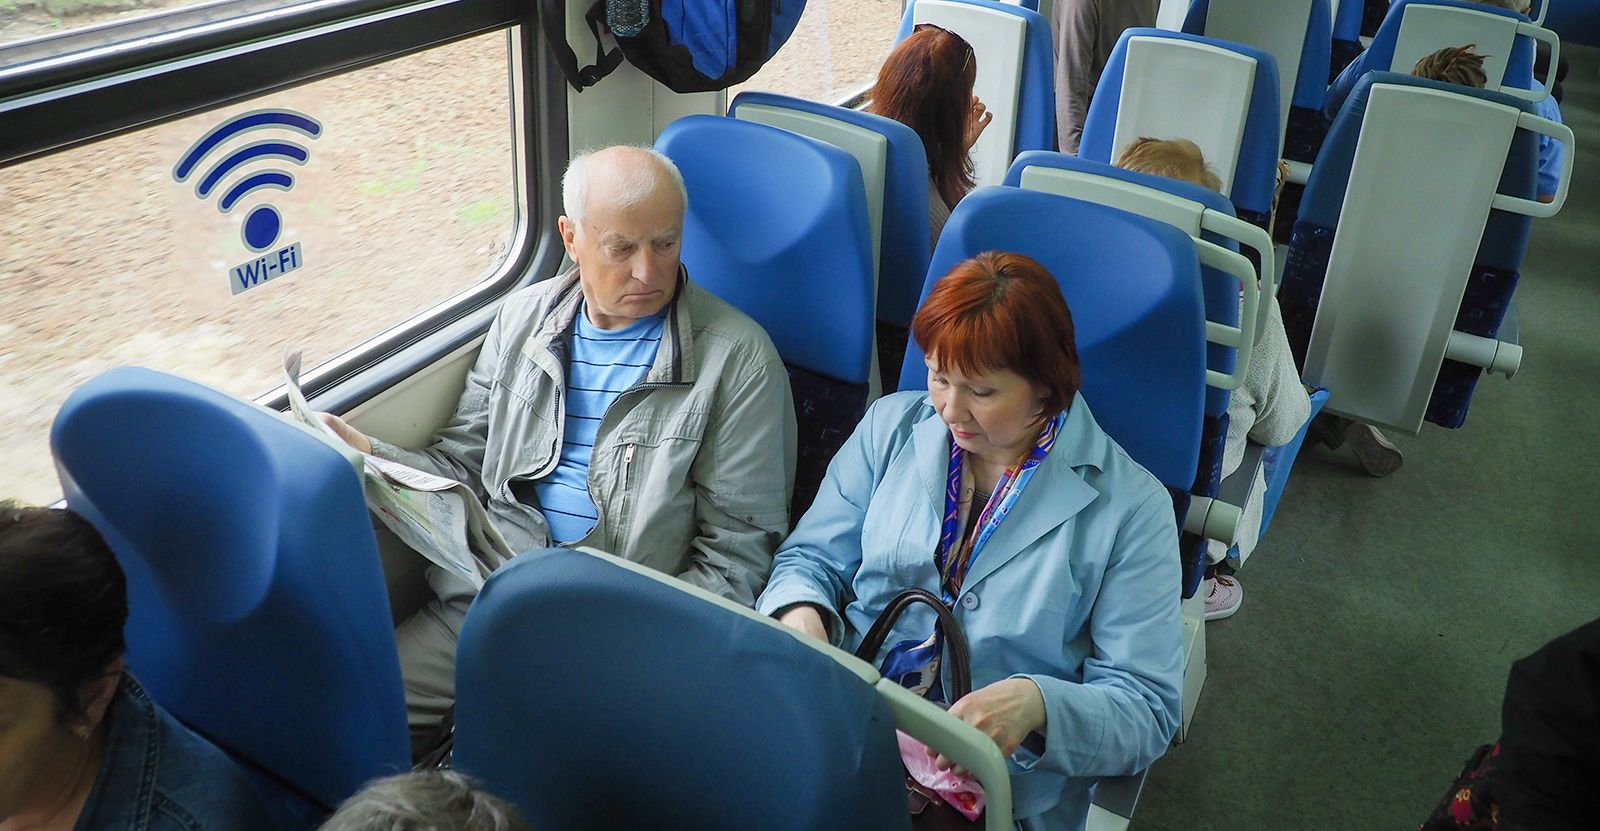 Бесплатный проезд для пенсионеров в московской области. Пенсионеры в общественном транспорте. Пенсионеры в электричке. Транспорт для Стариков. Пенсионеры в автобусе.